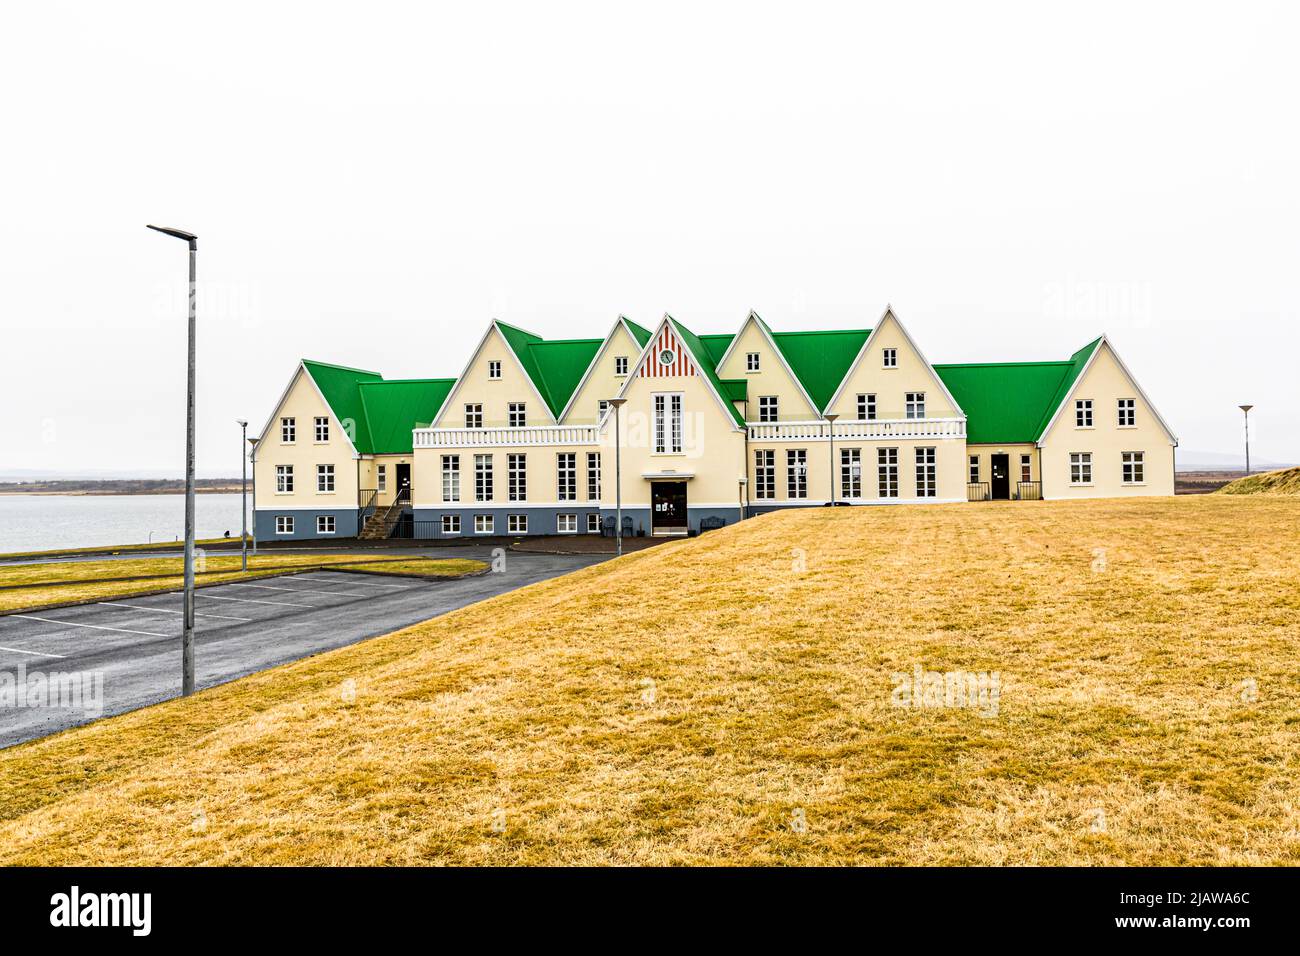 Héraðsskólin est l'ancienne école de Laugarvatn. Conçue par l'architecte d'État Guðjón Samúelsson (1887-1950) également architecte de Hallgrímskirkja à Reykjavik, l'école est maintenant utilisée comme auberge de charme. C'était le premier bâtiment du village à être chauffé avec la chaleur de la source chaude. Maison d'hôtes historique Héraðsskólinn à Laugarvatn, Islande Banque D'Images